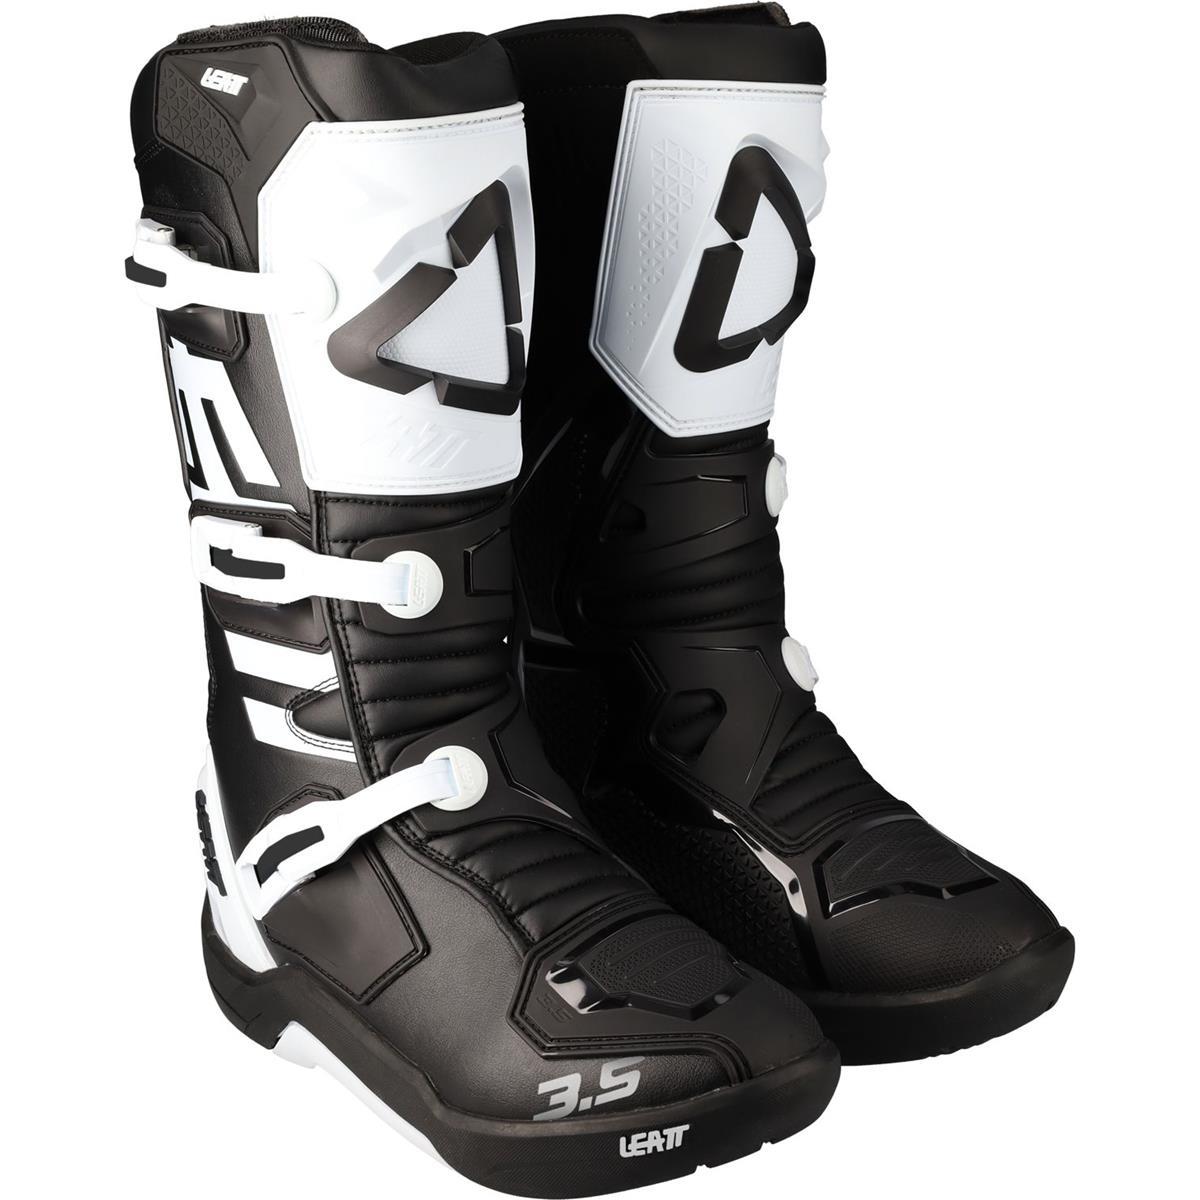 Leatt Kids Motocross-Stiefel 3.5 Schwarz/Weiß